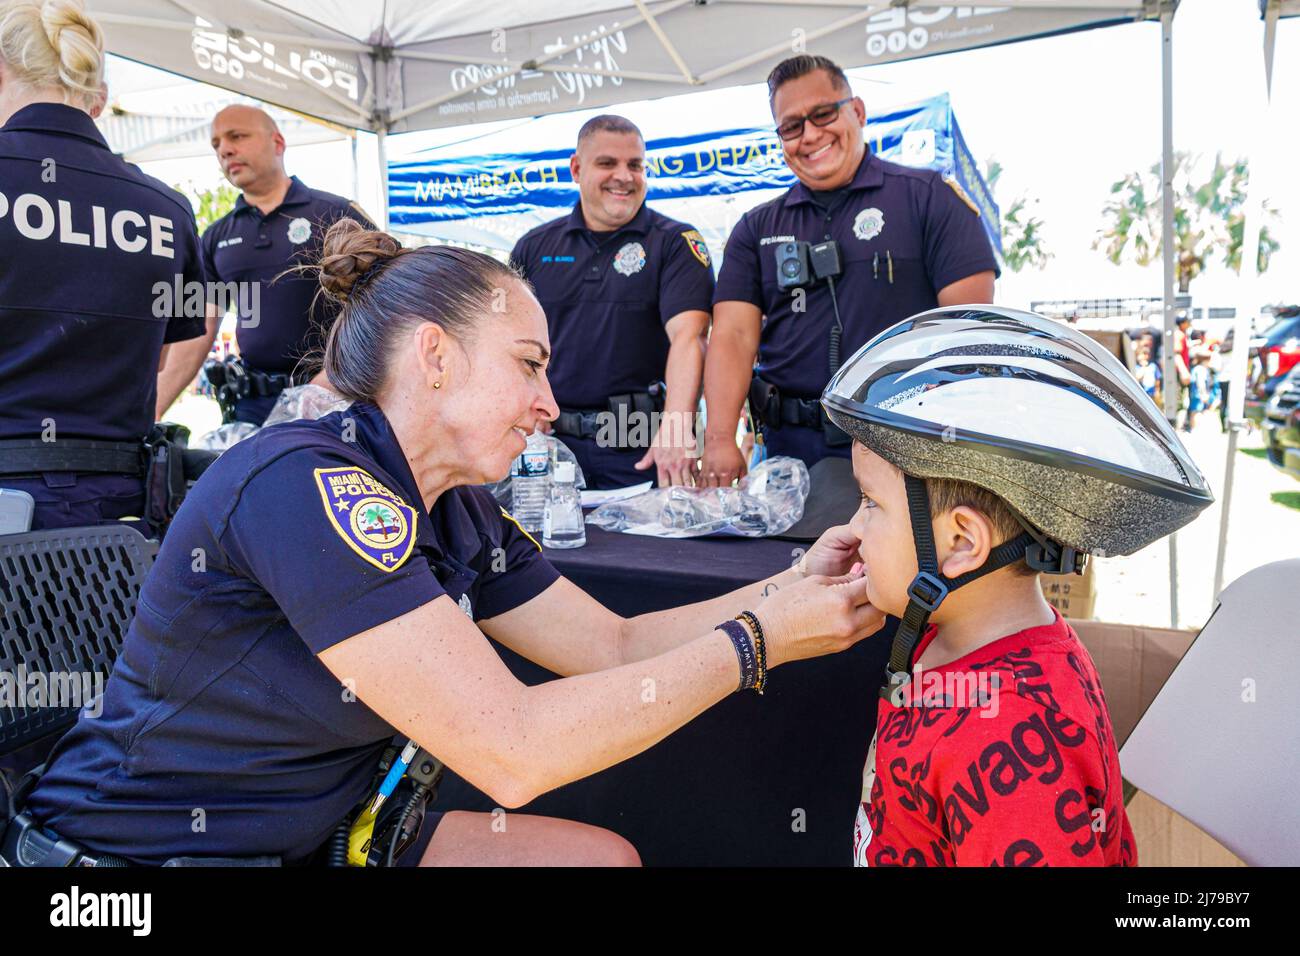 Miami Beach Florida jährliche Miami Beach Police Block Party Familie kostenlose Veranstaltung Flamingo Park Fahrrad Helm Giveaway frei passenden Jungen Polizeioffizier poli Stockfoto